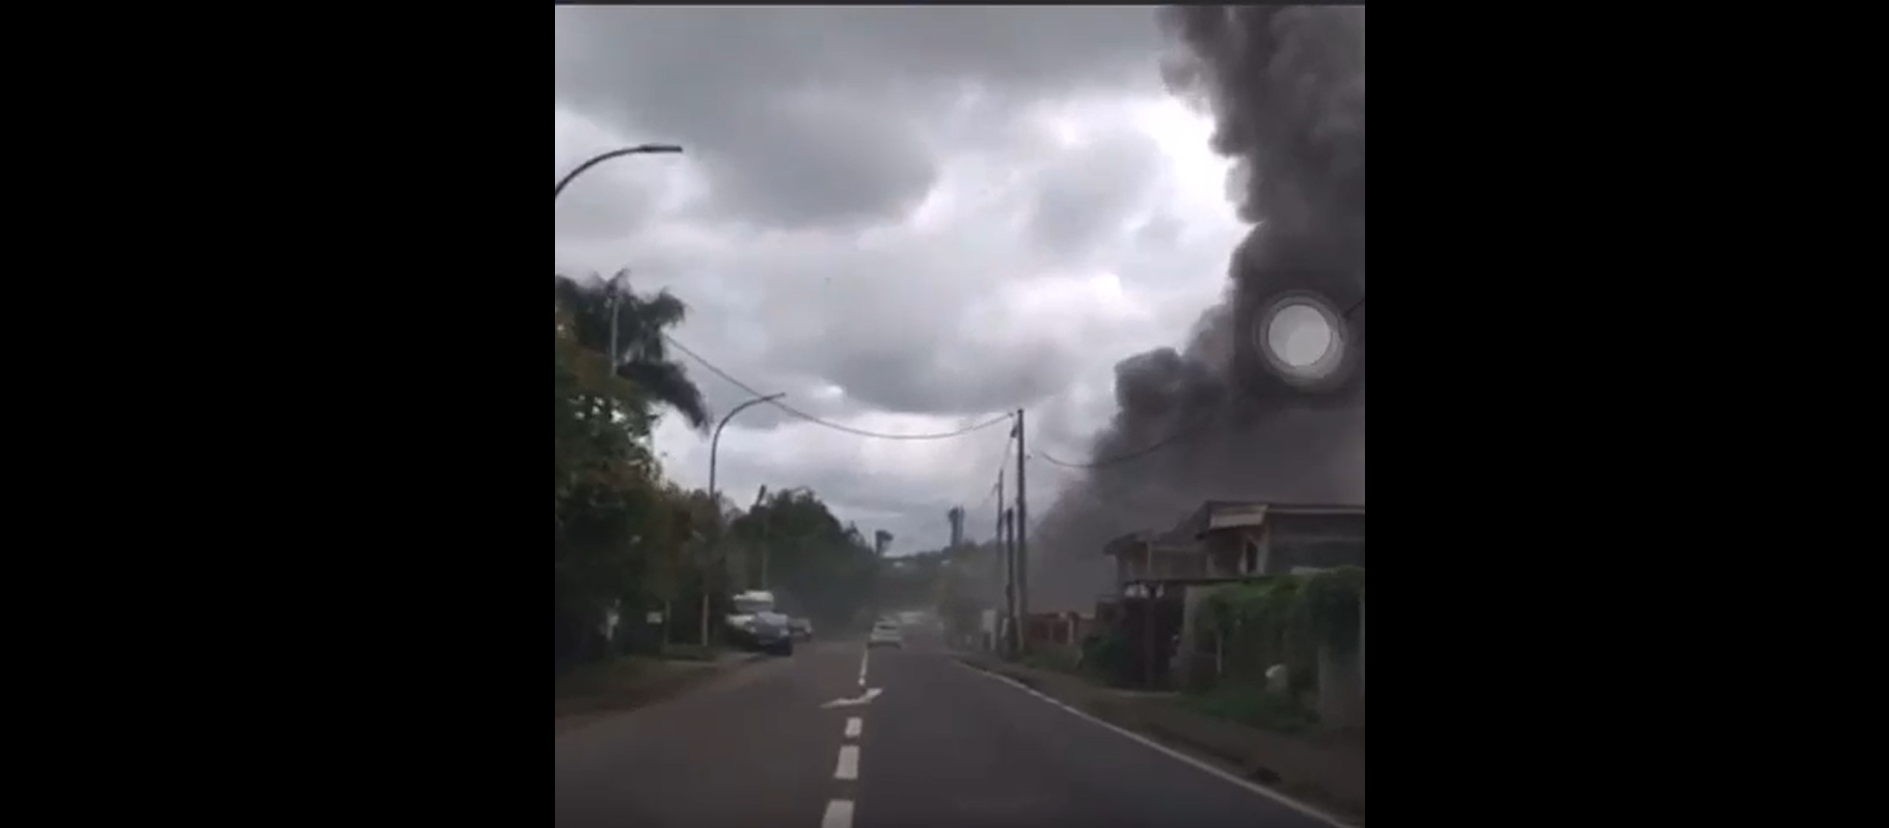     [VIDEO] L'incendie est éteint à Petit-Bourg 

